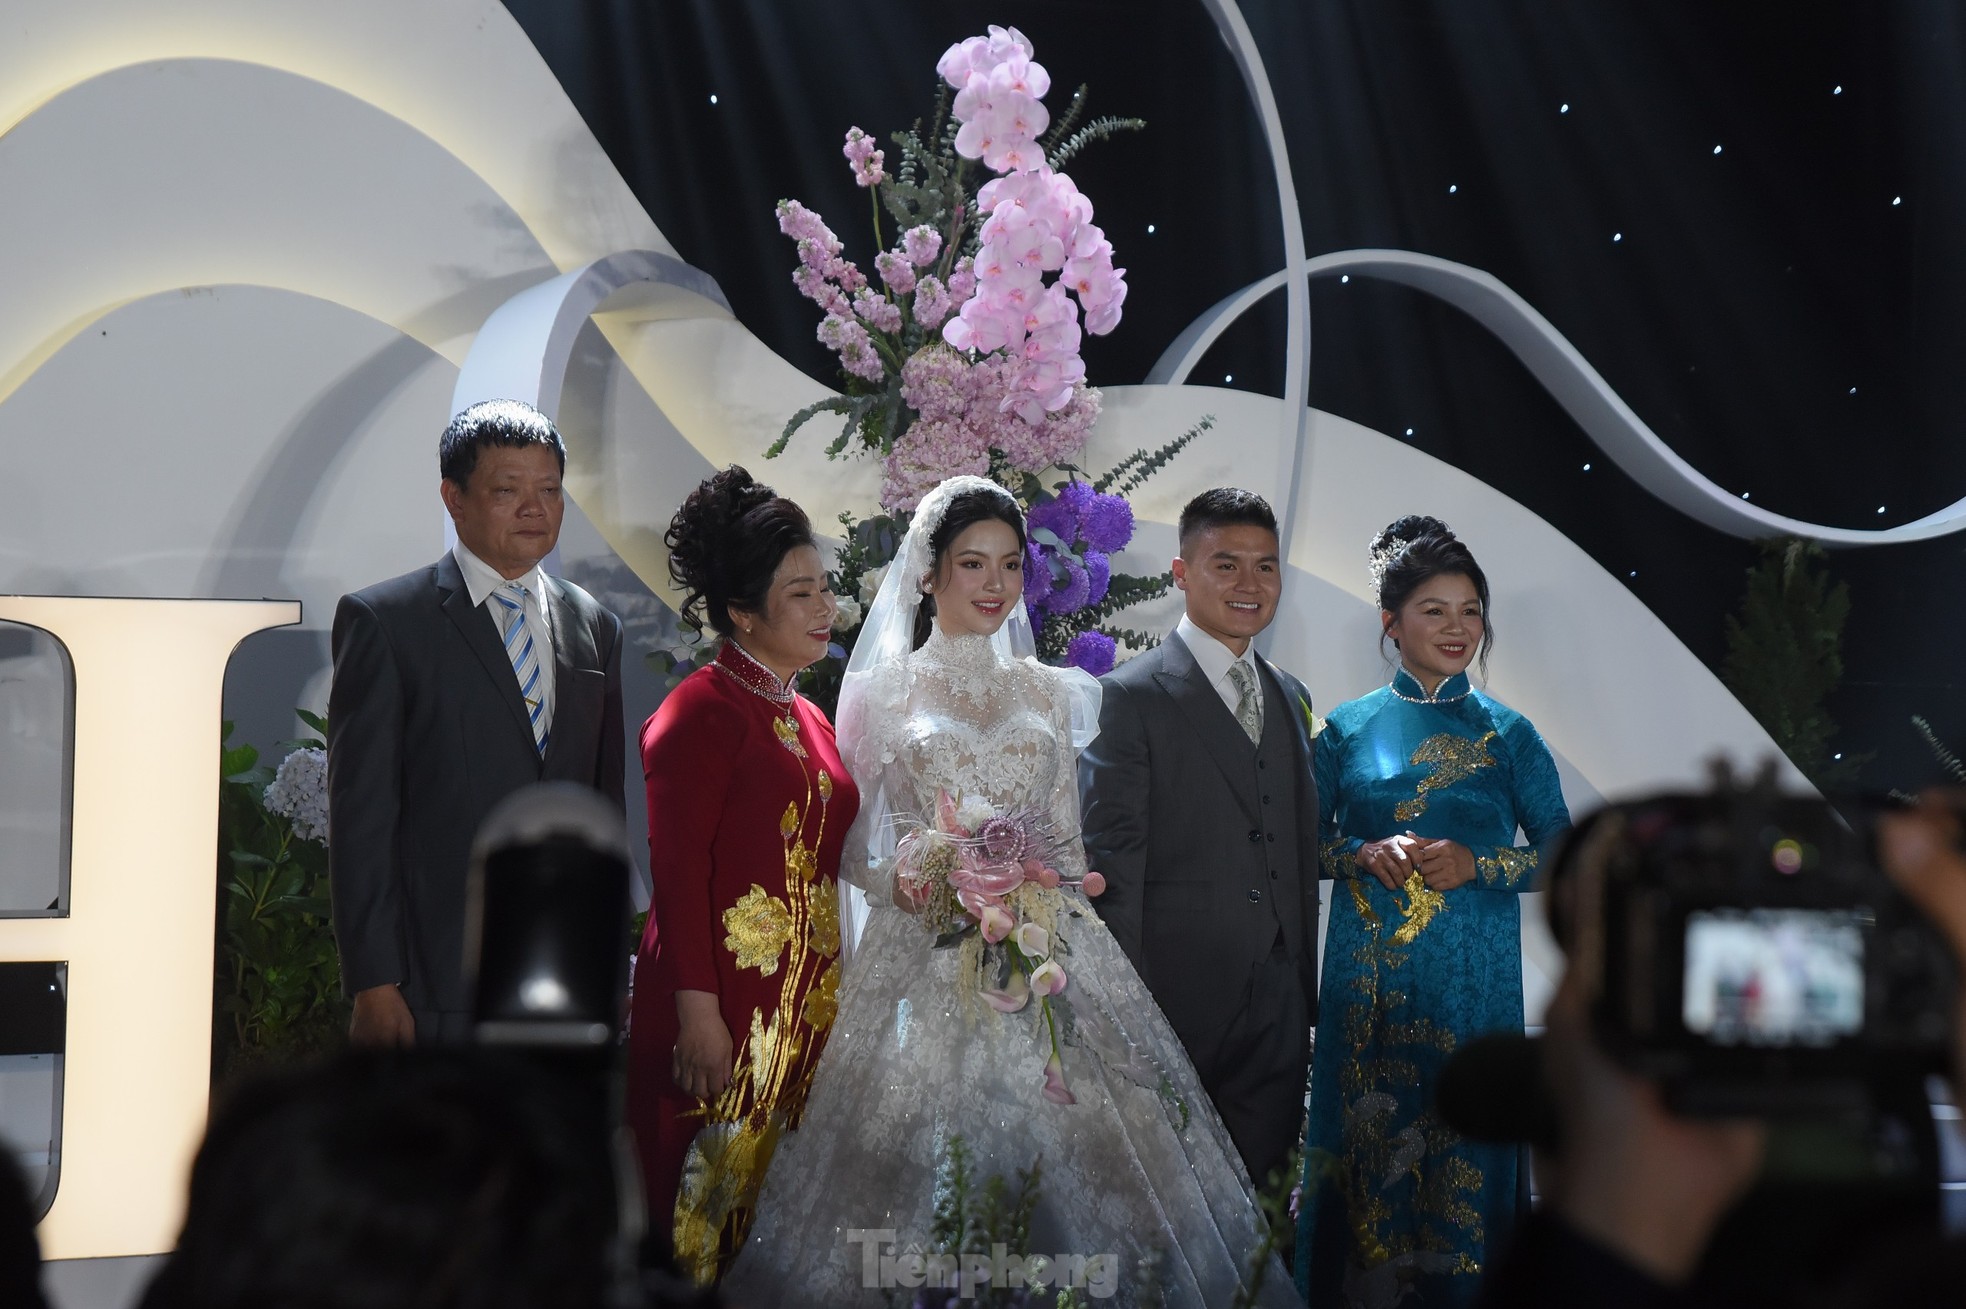 Diện váy cưới cúp ngực 150 triệu đồng, Chu Thanh Huyền rạng ngời bên Quang Hải ảnh 9